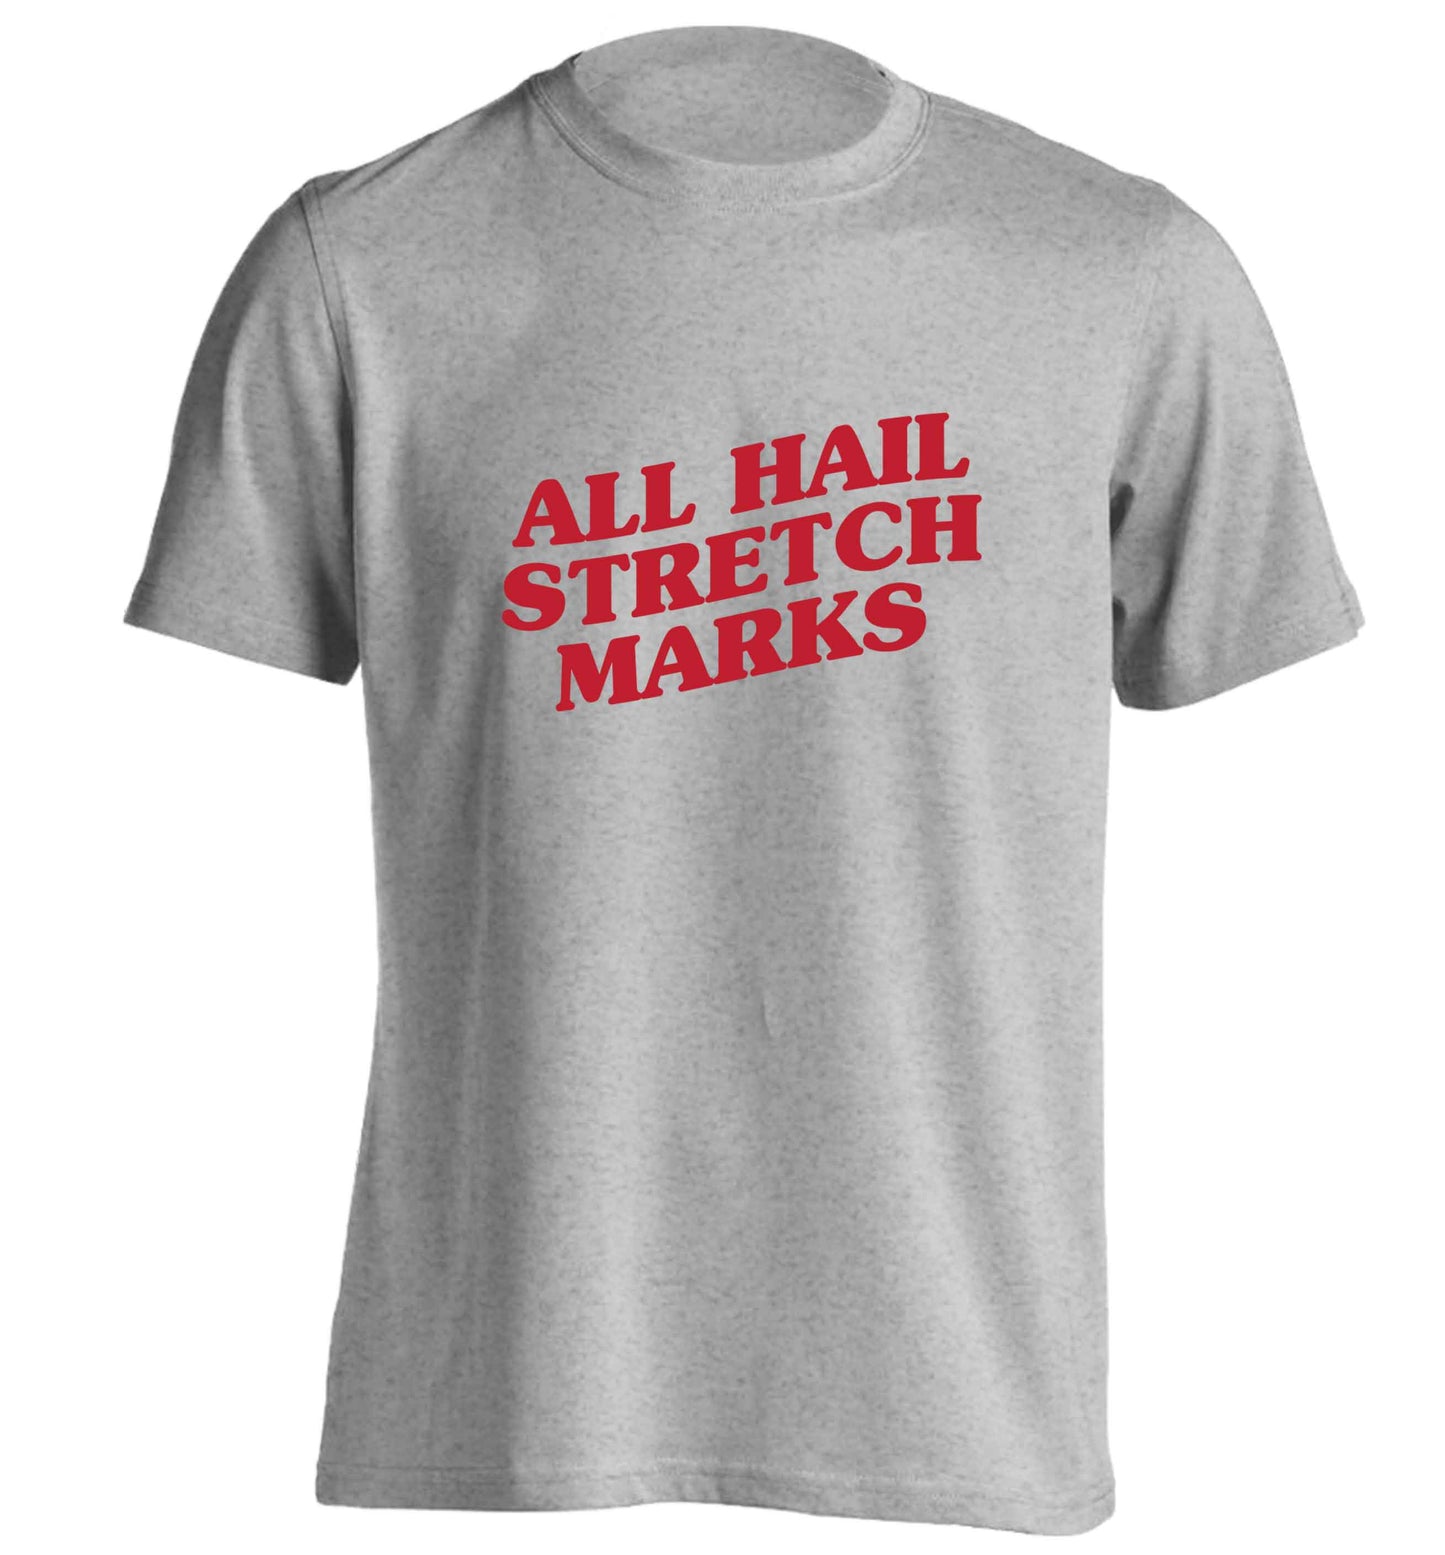 All hail stretch marks adults unisex grey Tshirt 2XL